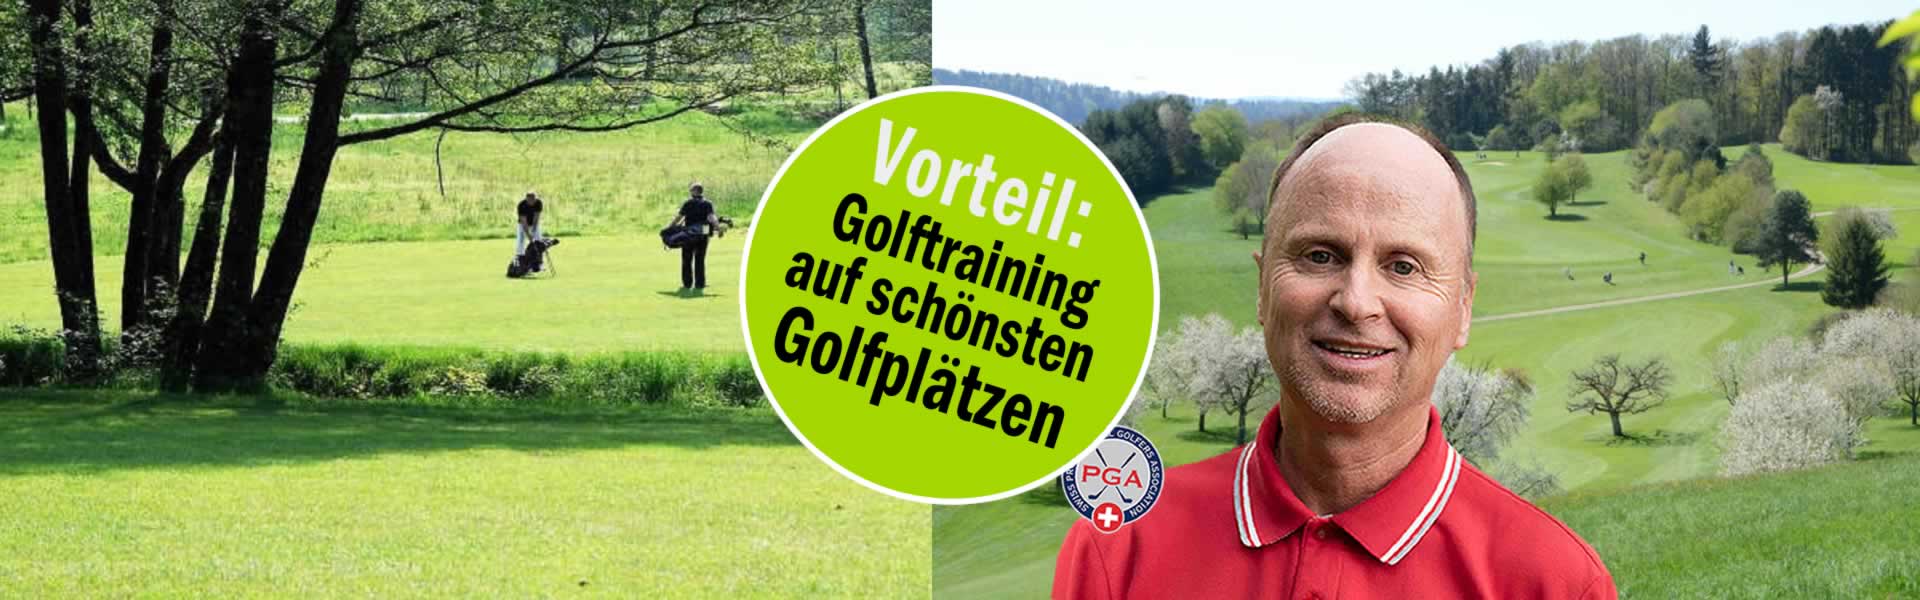 C-Golf-Unterricht-Golf-Pro-Lehrer-Golfstunden-Zuerich-Thierry-Rombaldi-06